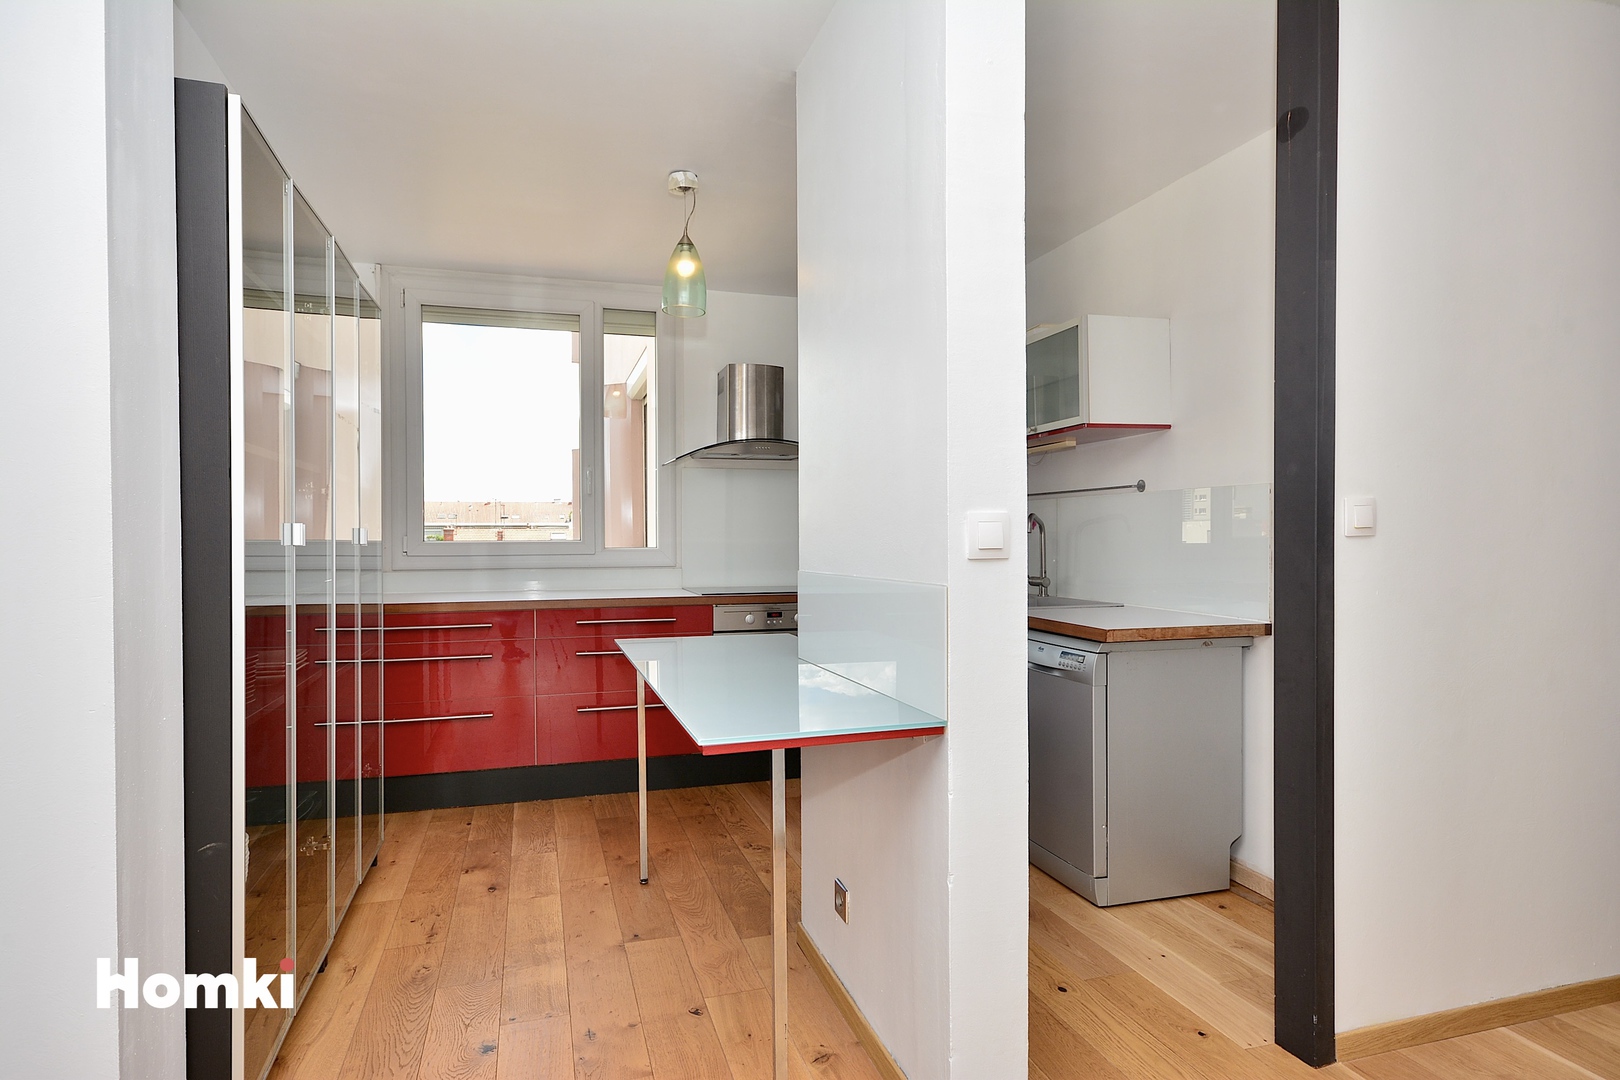 Homki - Vente Appartement  de 89.0 m² à Villeurbanne 69100